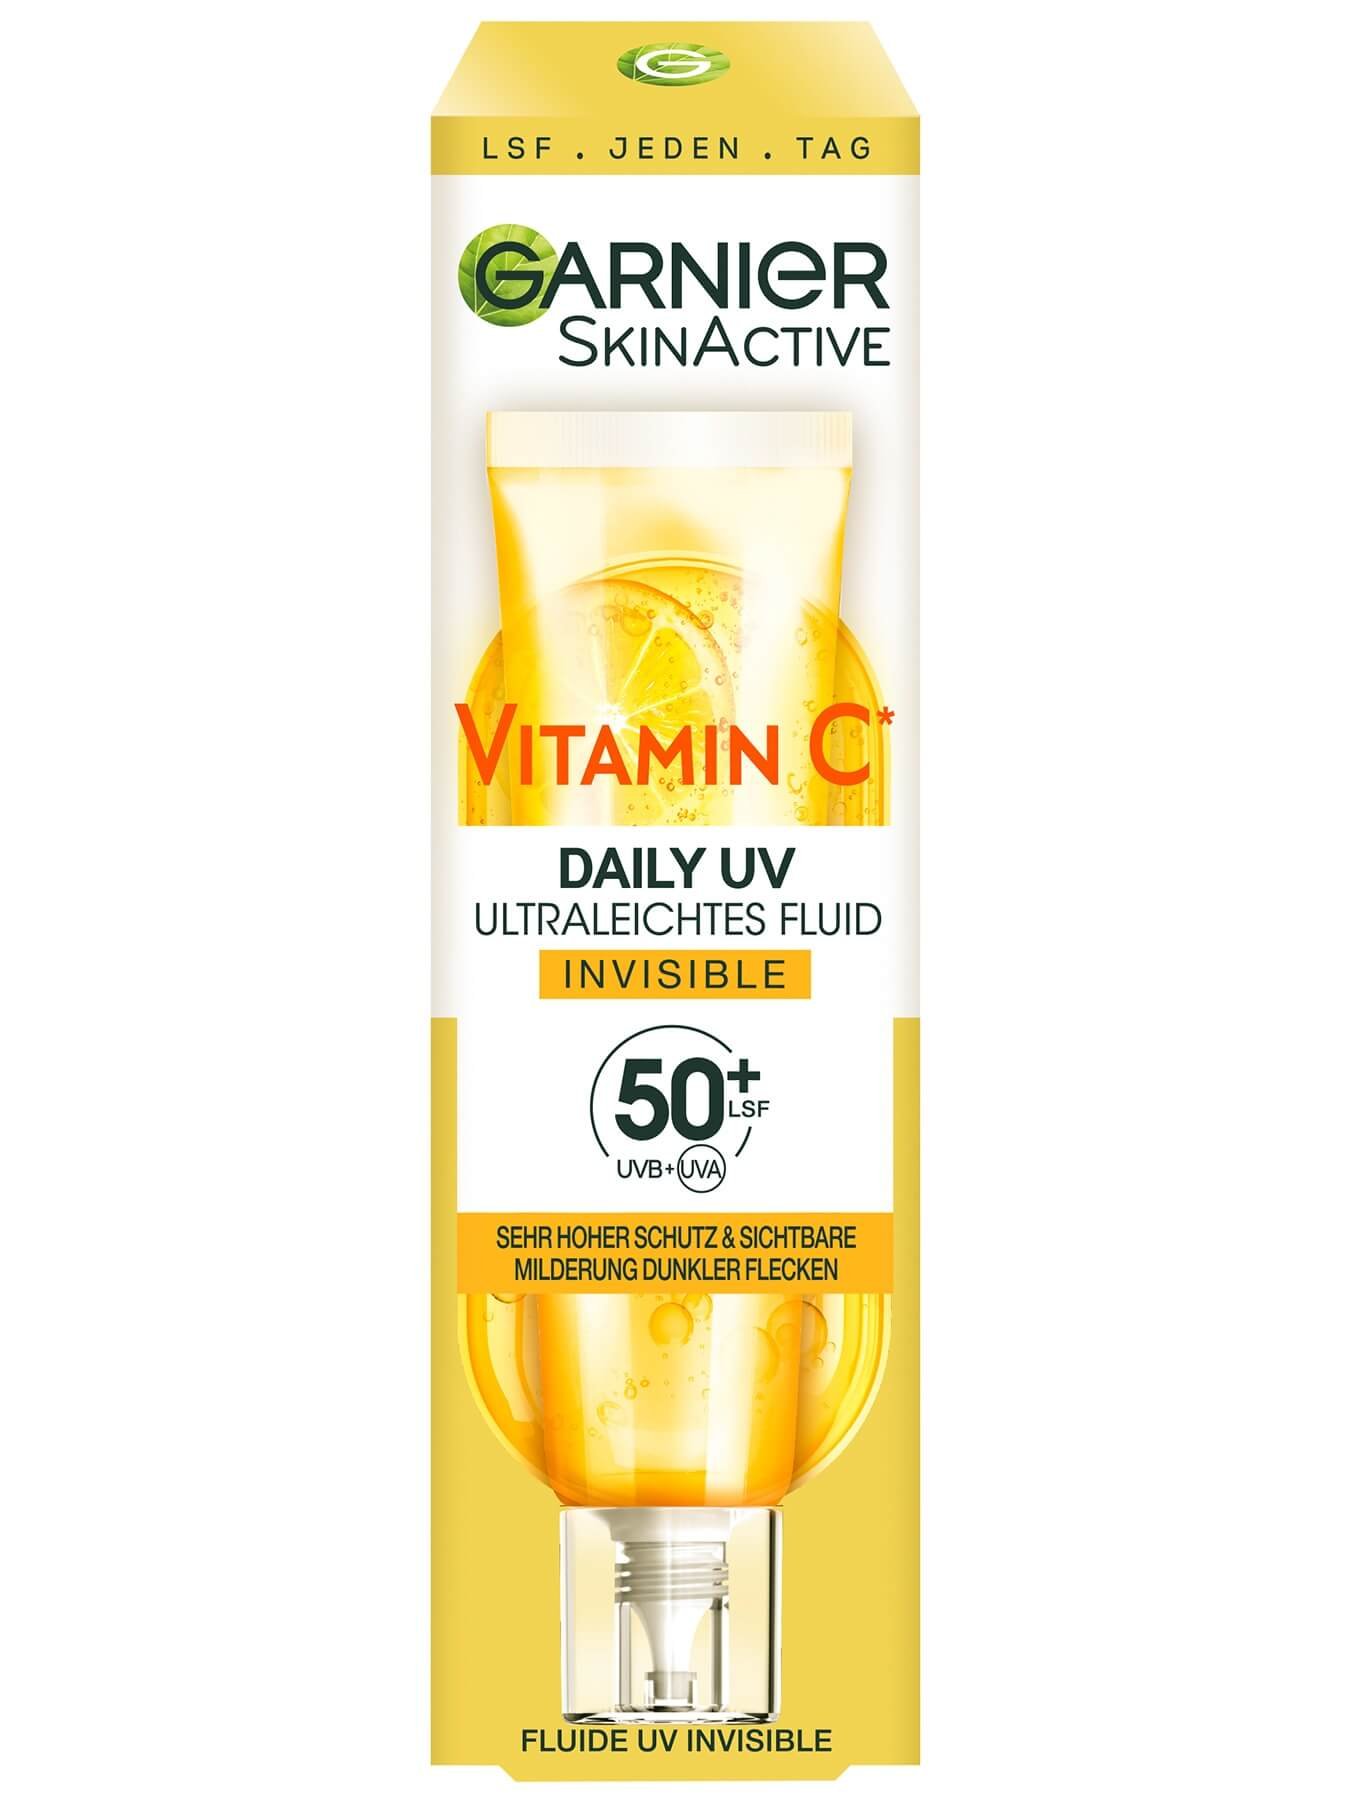 SkinActive Vitamin C Tägliches Sonnenfluid Invisible mit LSF 50+ Verpackungsbild